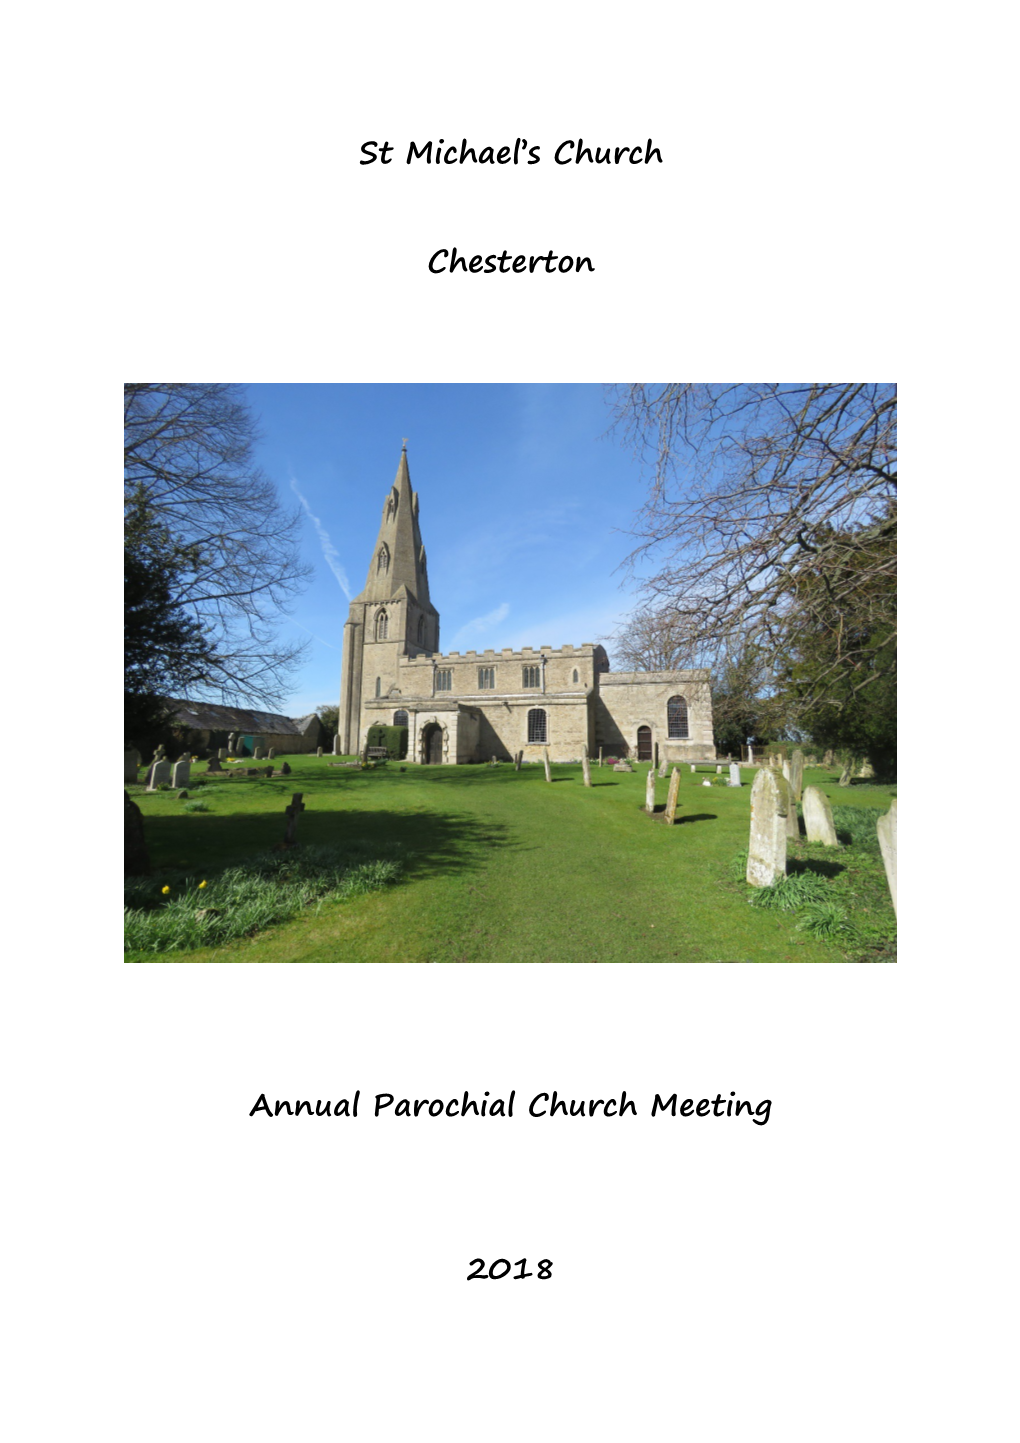 Agenda for the Annual Parochial Church Meeting